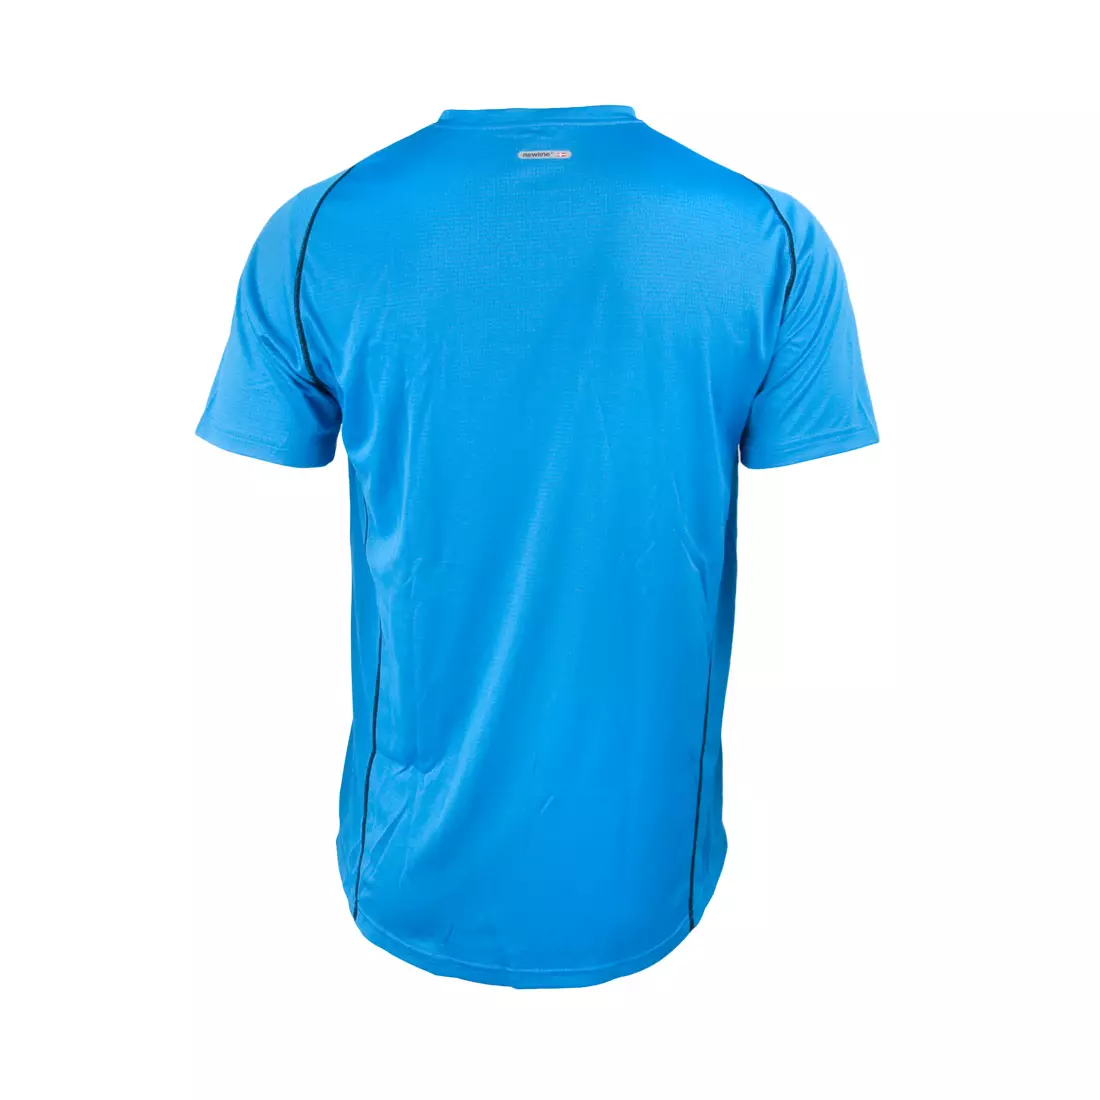 NEWLINE BASE COOLMAX TEE - men's running T-shirt 14603-016